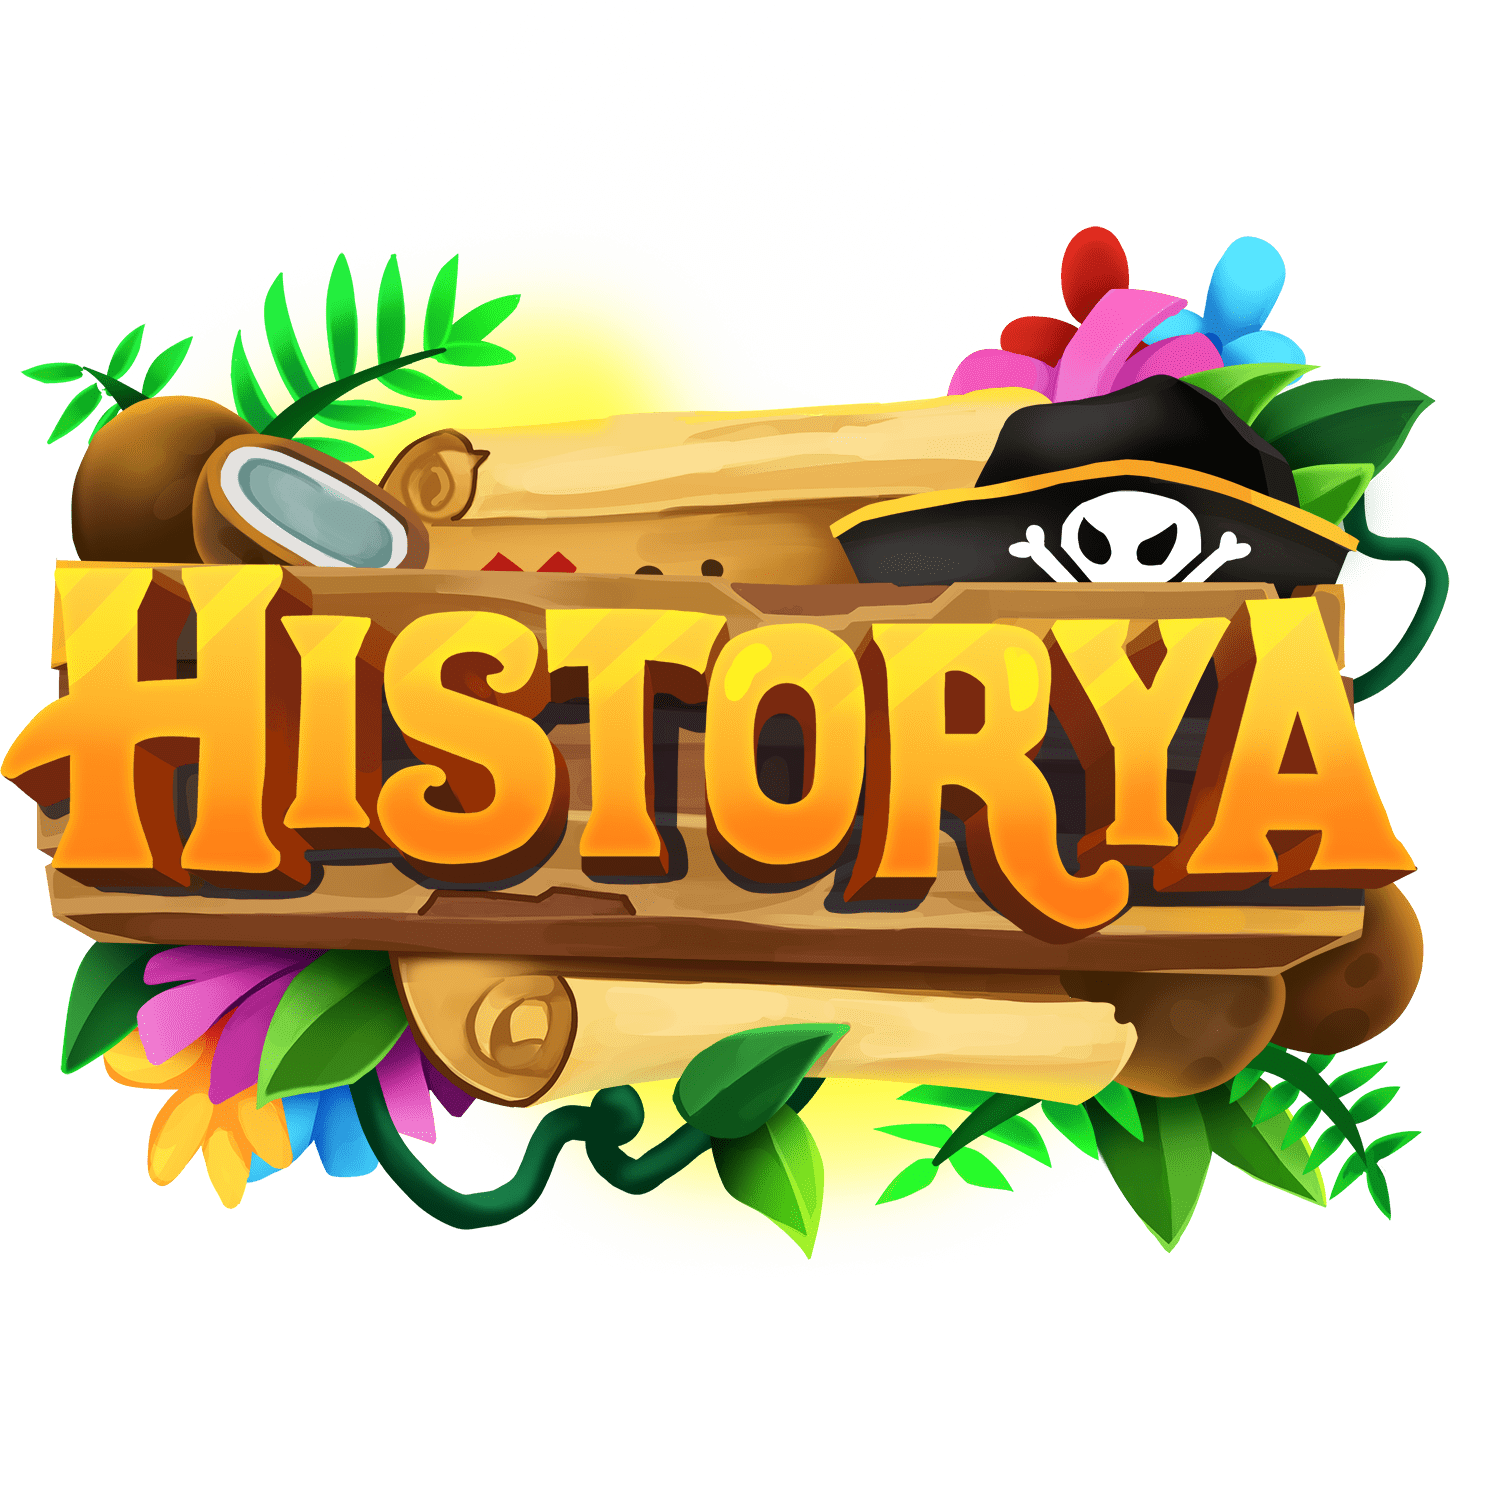 HistoryaIcon